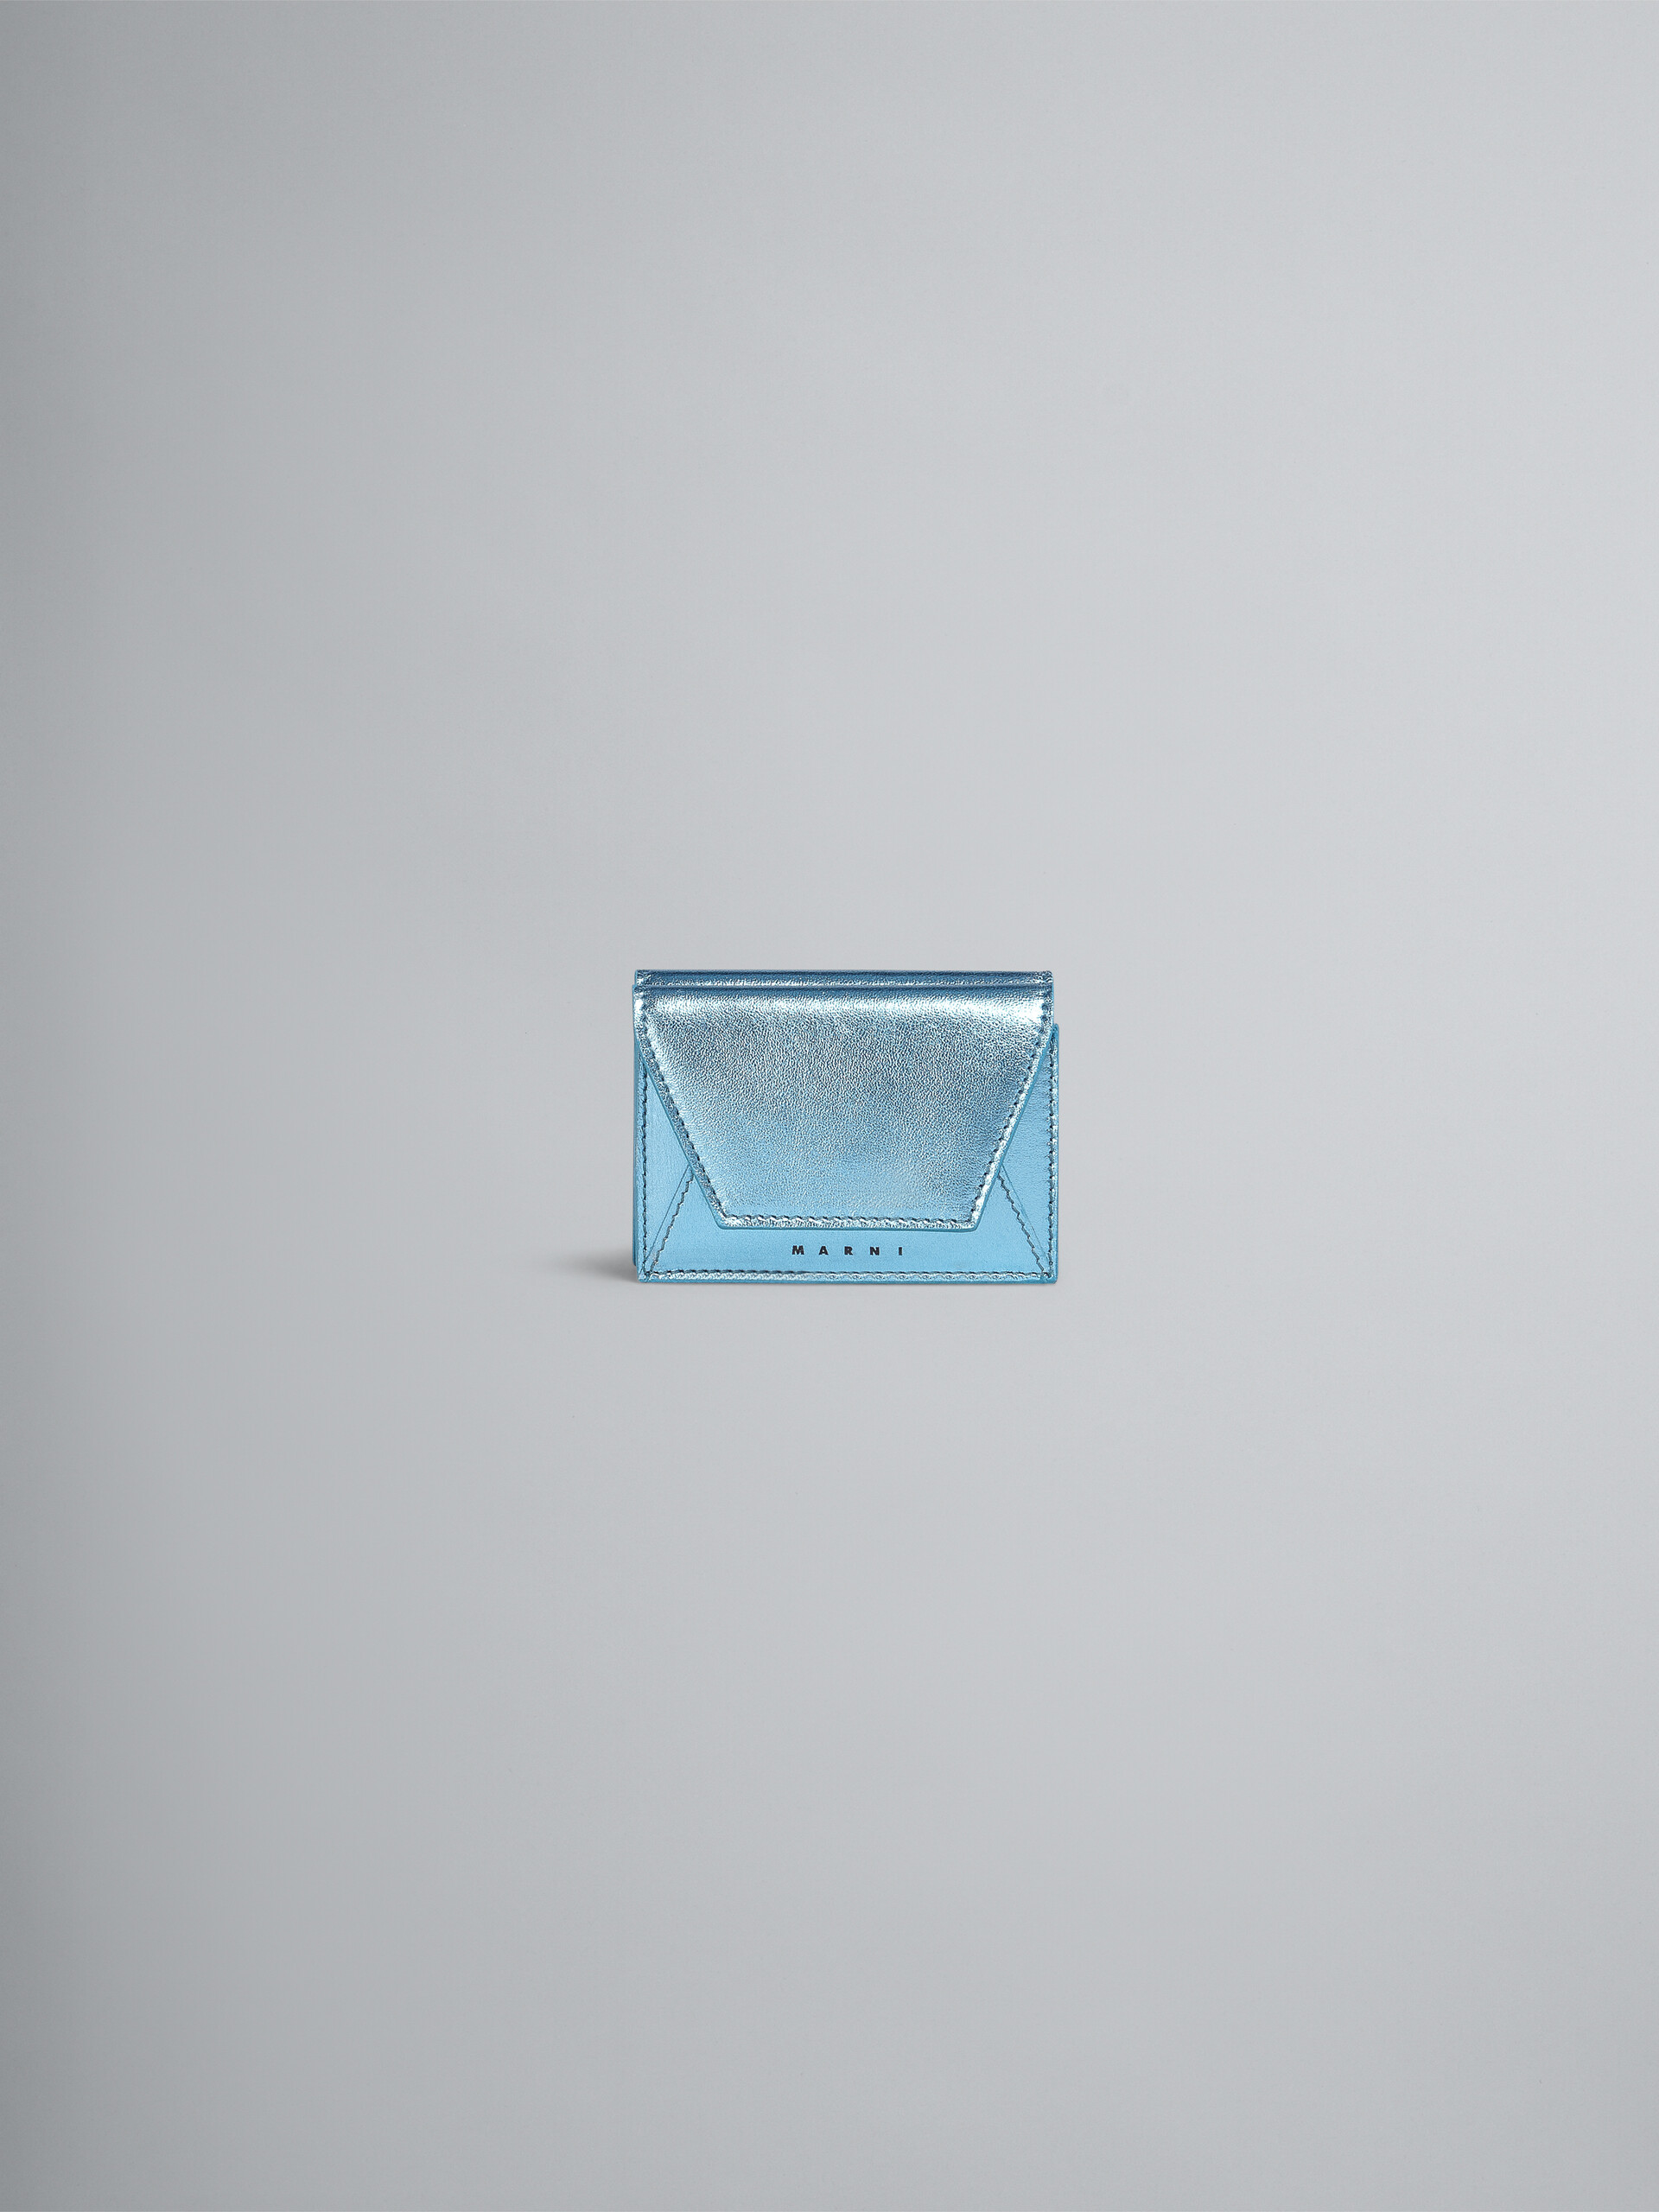 ブルーメタリック調 ナッパレザー三つ折りウォレット - 財布 - Image 1